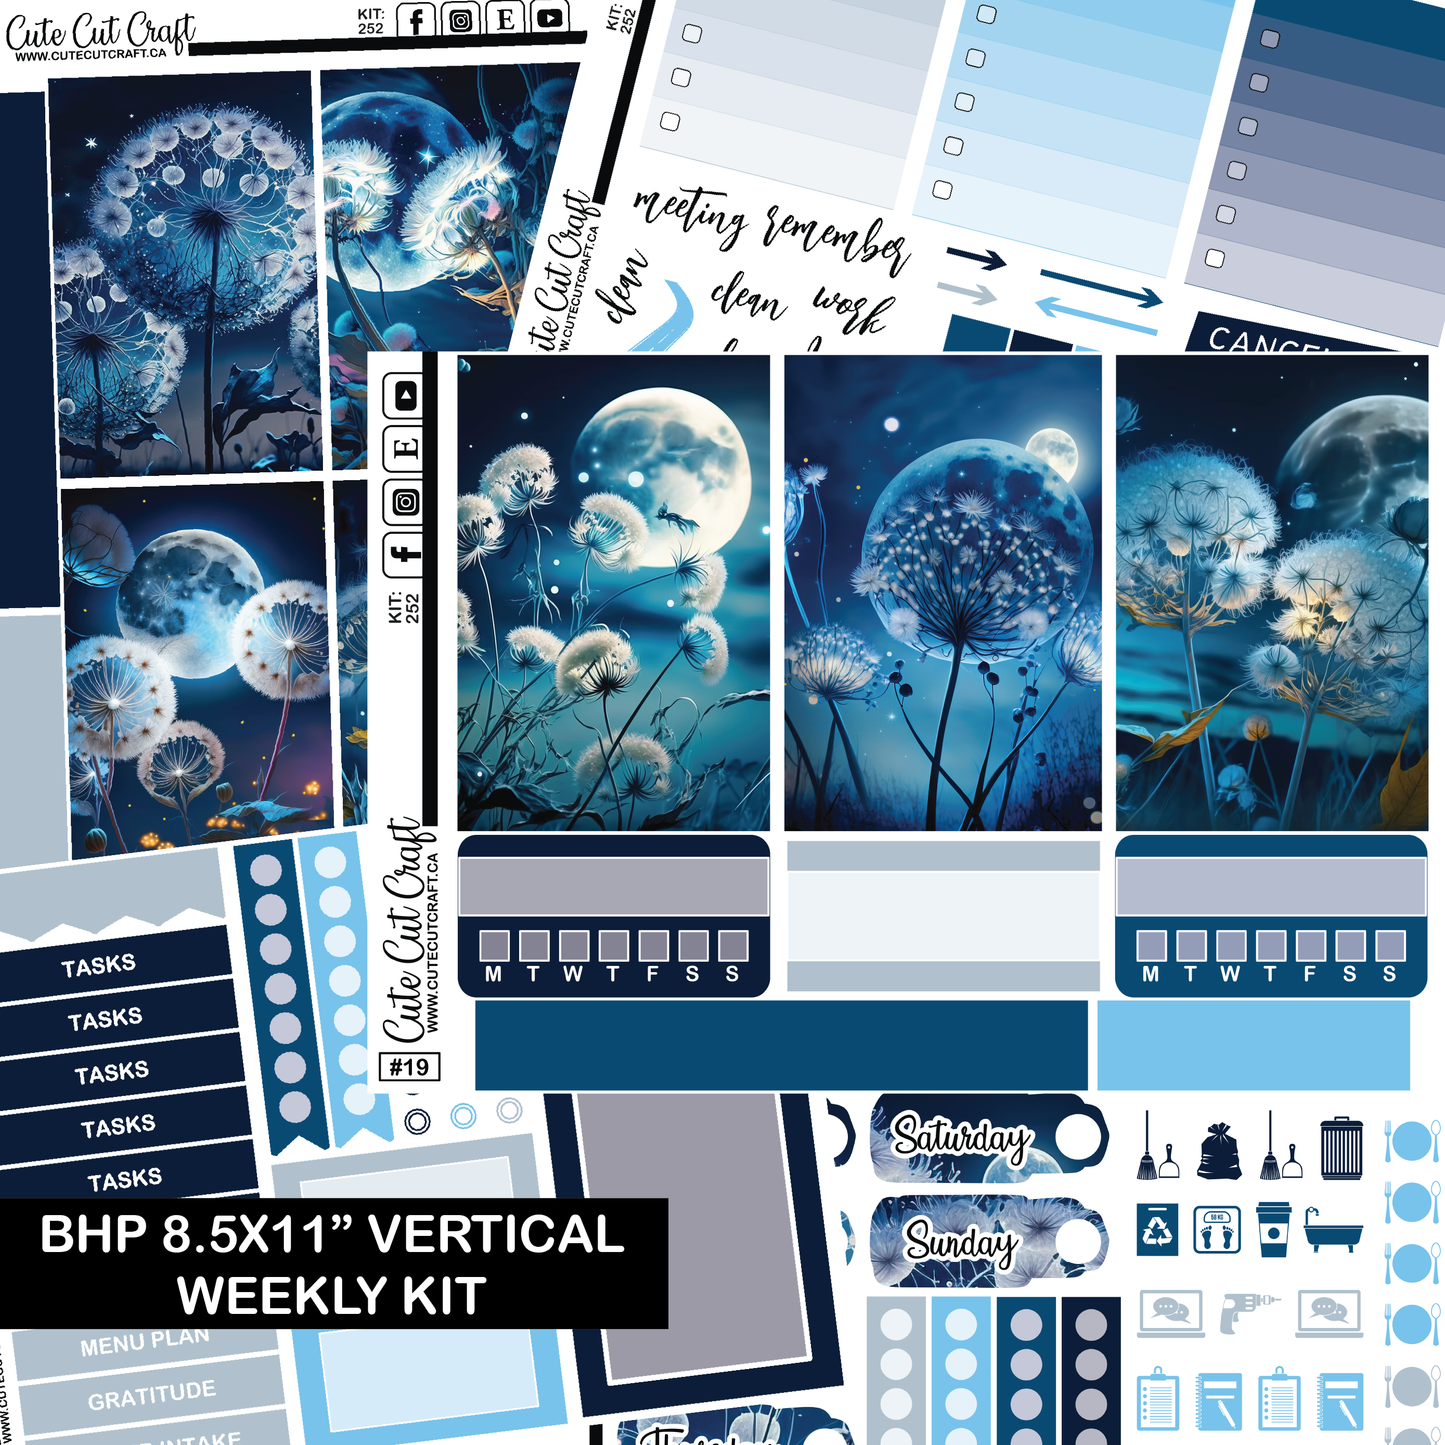 Moonlight Dandy #252 || HP Big Weekly Kit